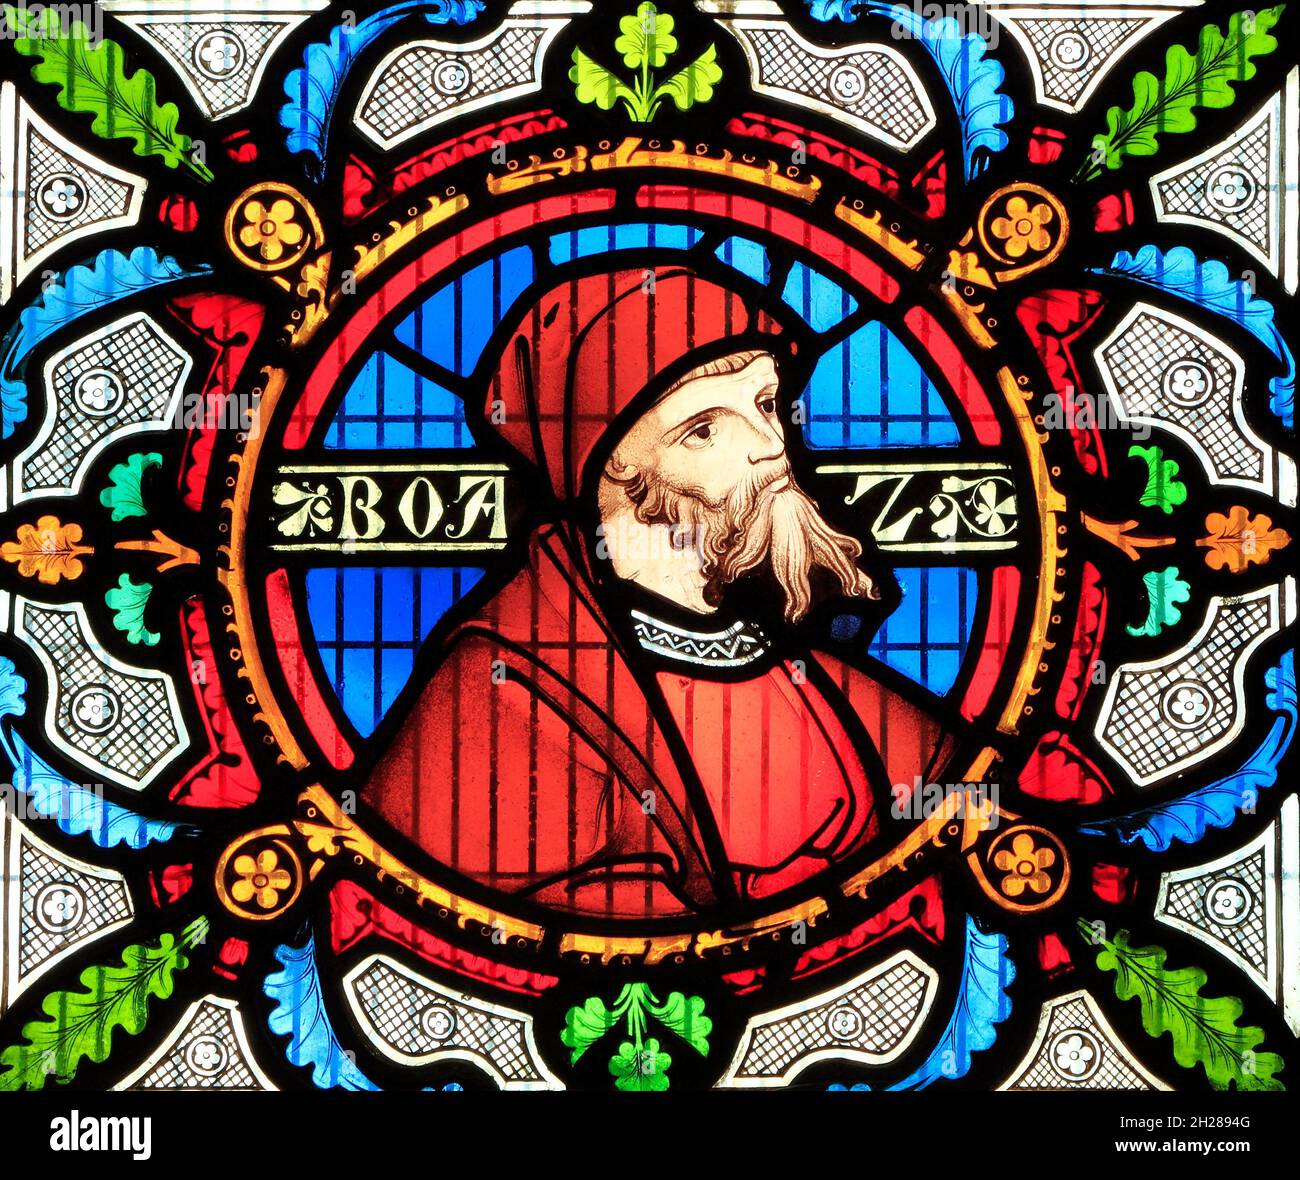 Boaz, détail de l'histoire de Ruth, vitraux, par Robert Bayne, de Heaton Butler & Bayne, 1862 ans, église de Sculthorpe, Norfolk Angleterre, Royaume-Uni Banque D'Images